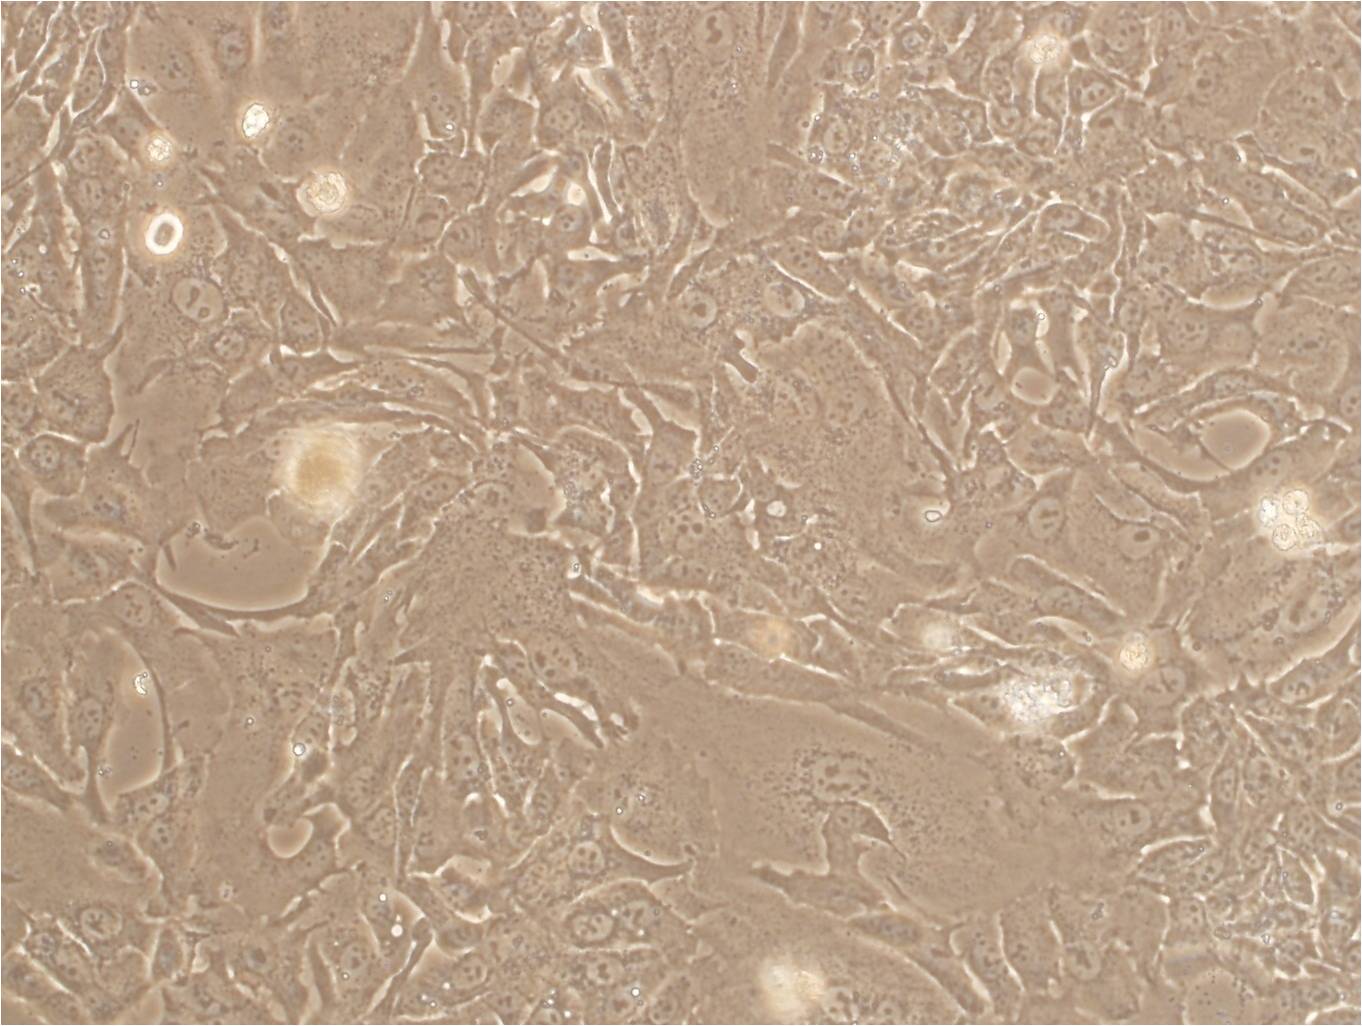 COV504 cell line人卵巢癌细胞系